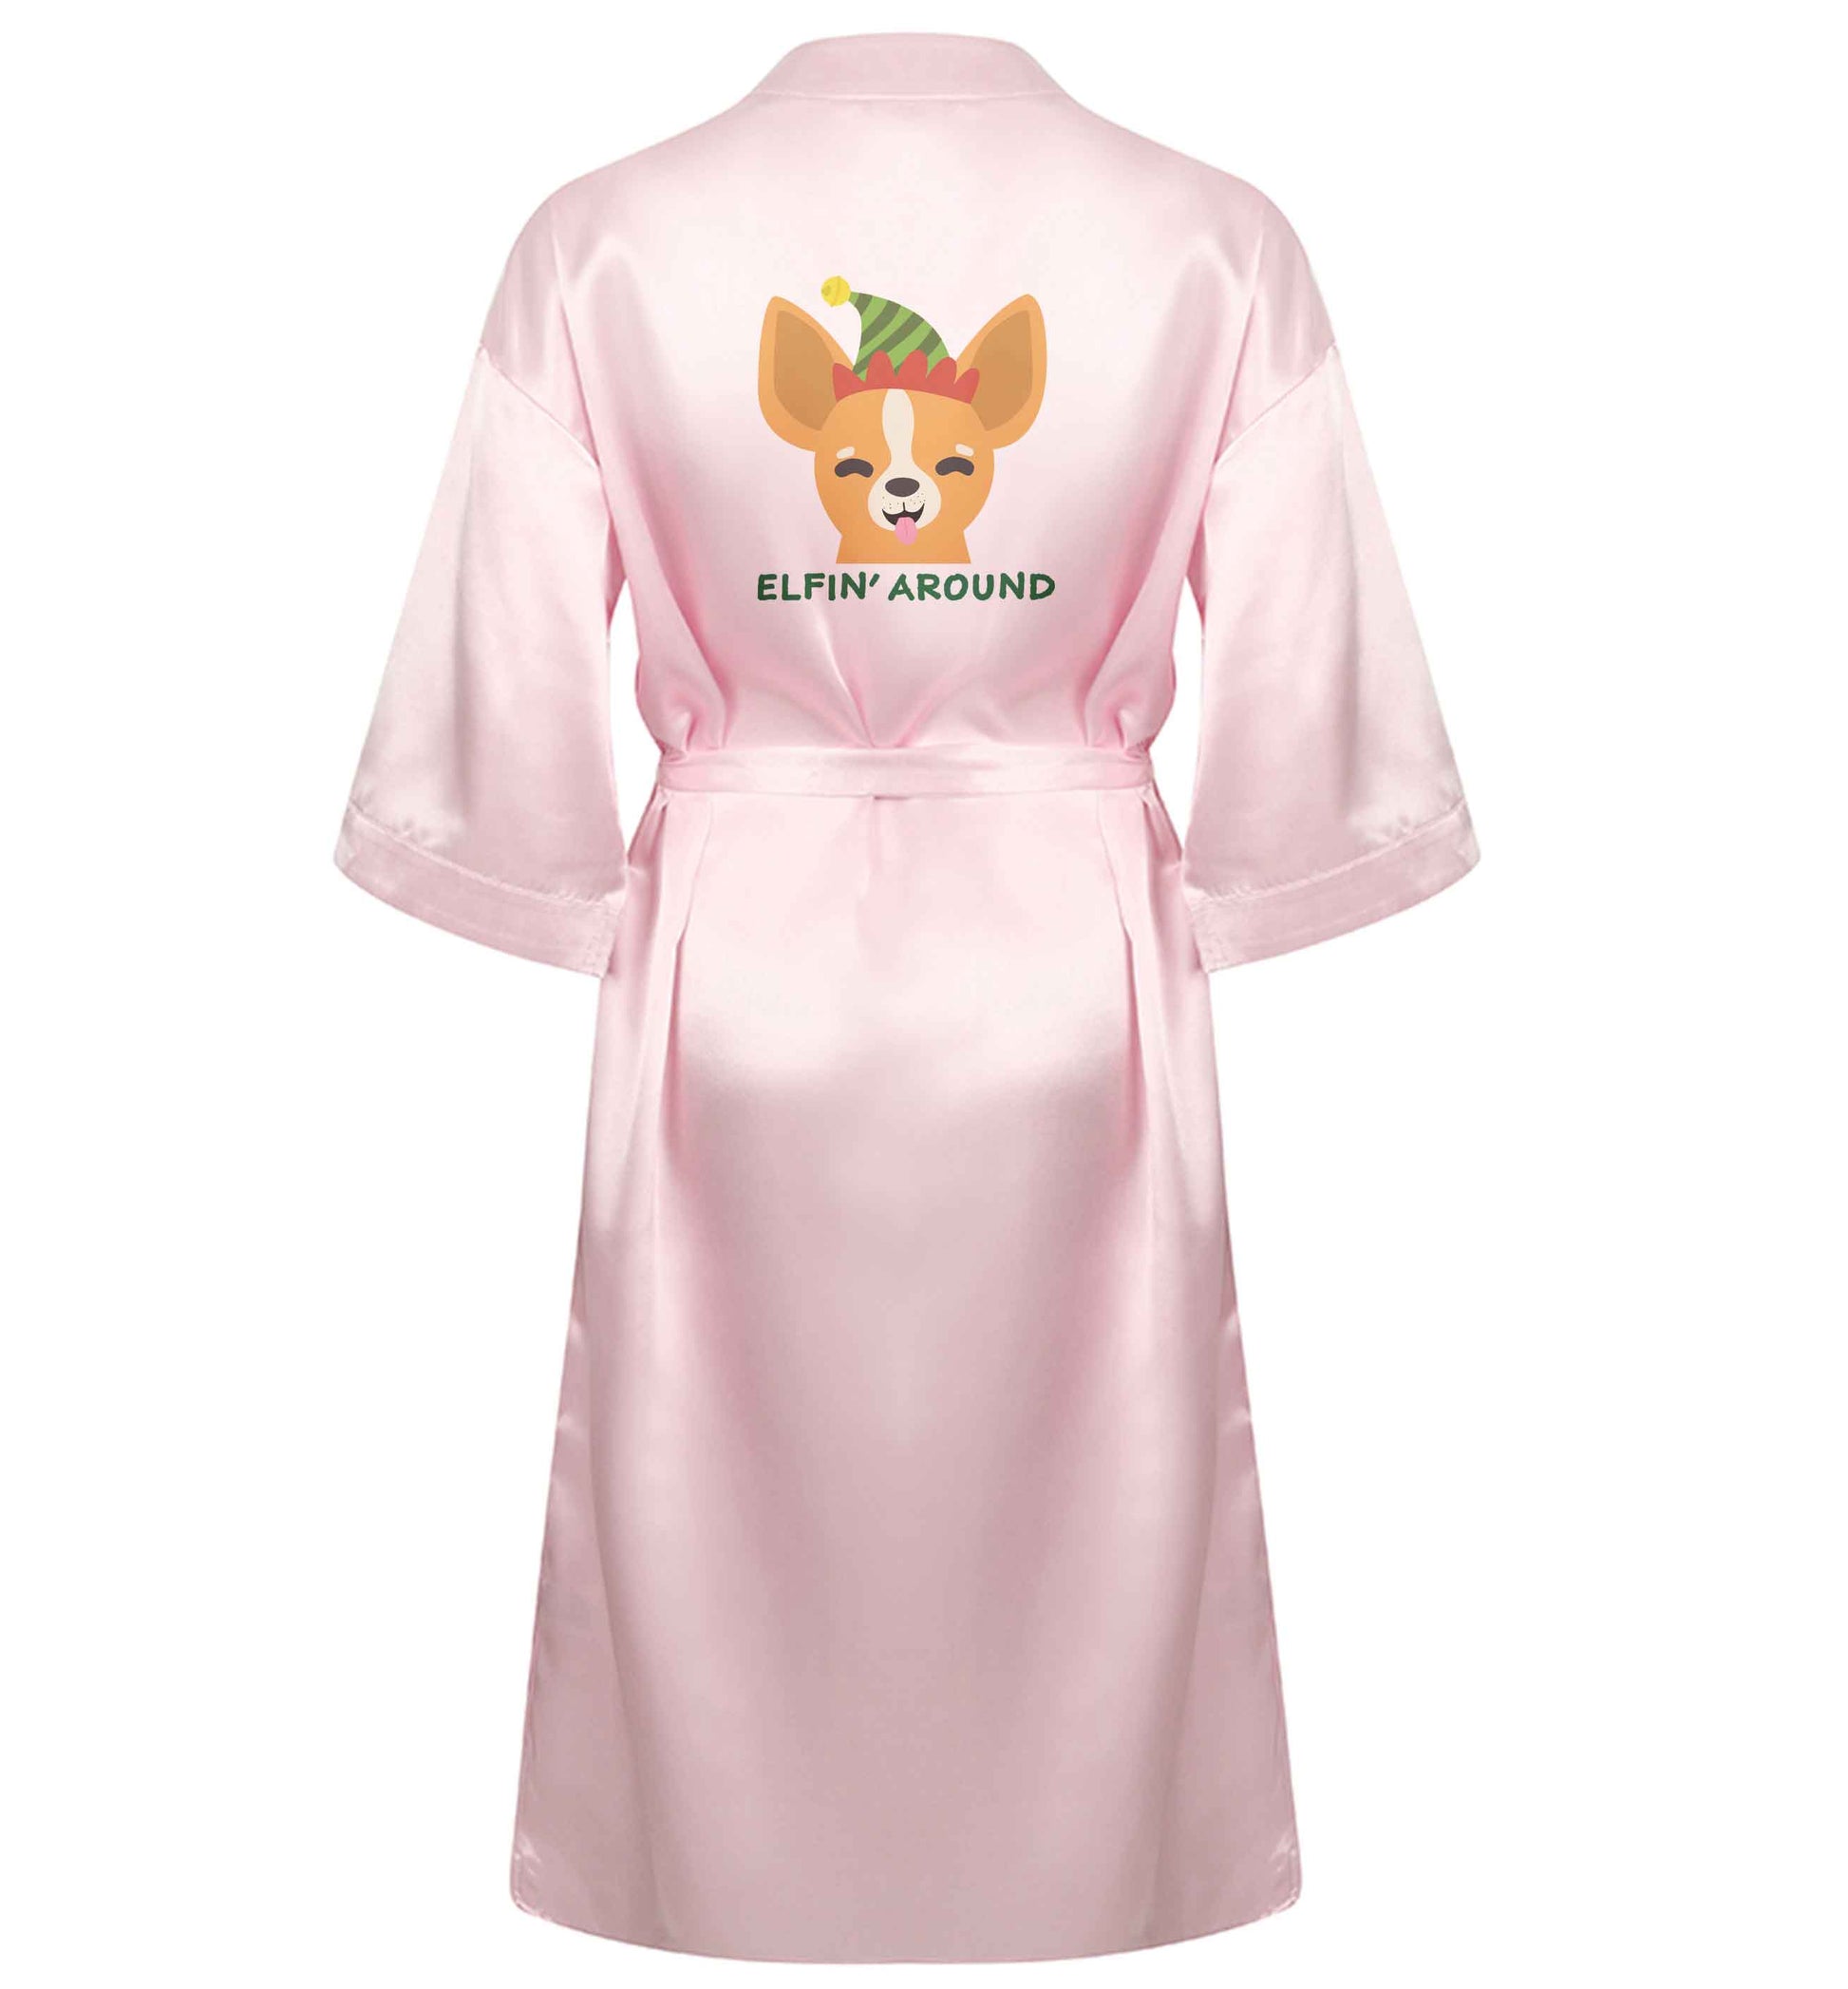 Elfin' around XL/XXL pink ladies dressing gown size 16/18